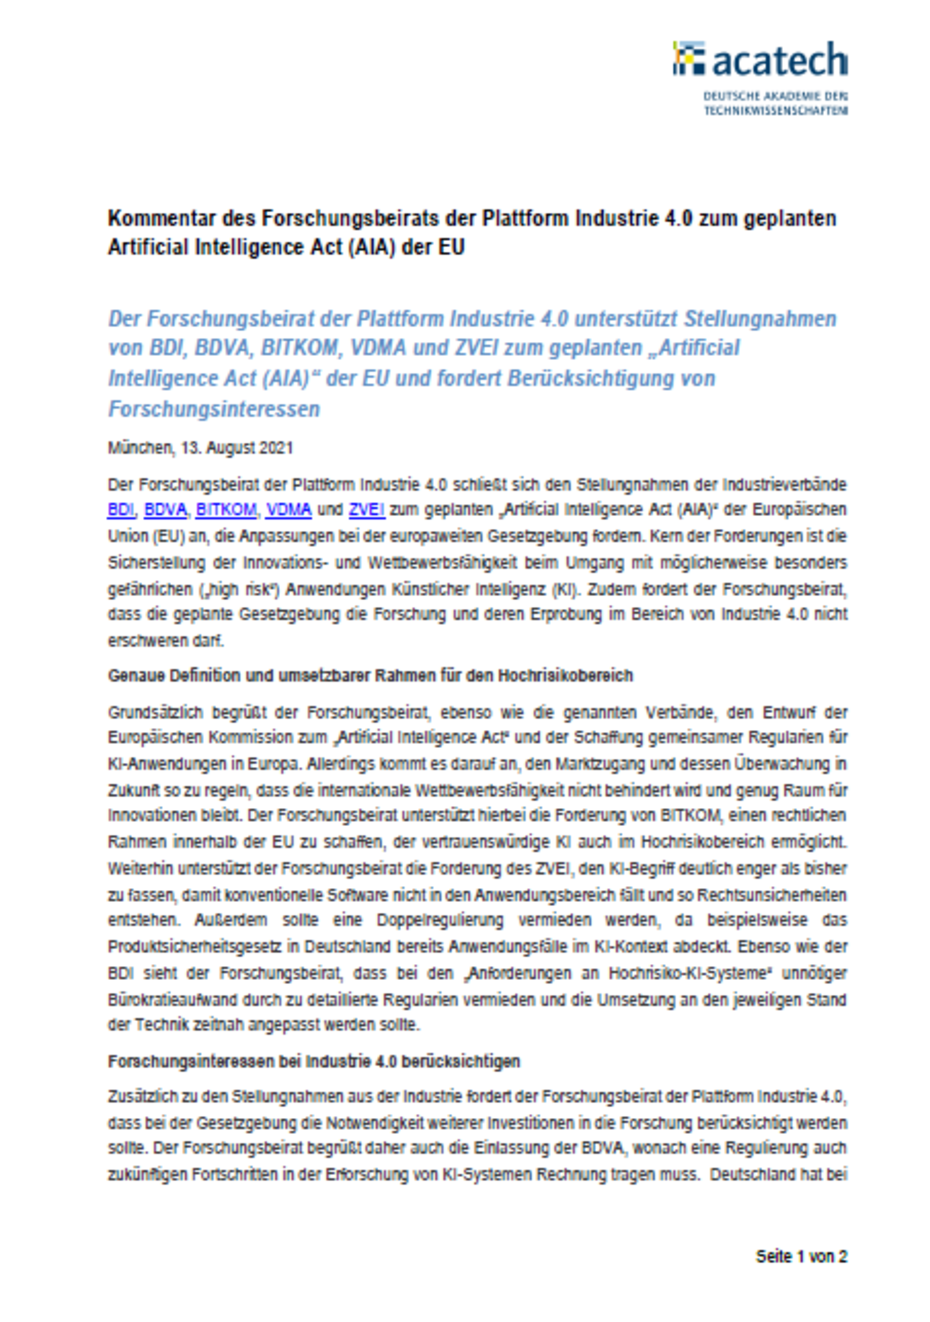 Kommentar des Forschungsbeirats der Plattform Industrie 4.0 zum geplanten AI Act der EU